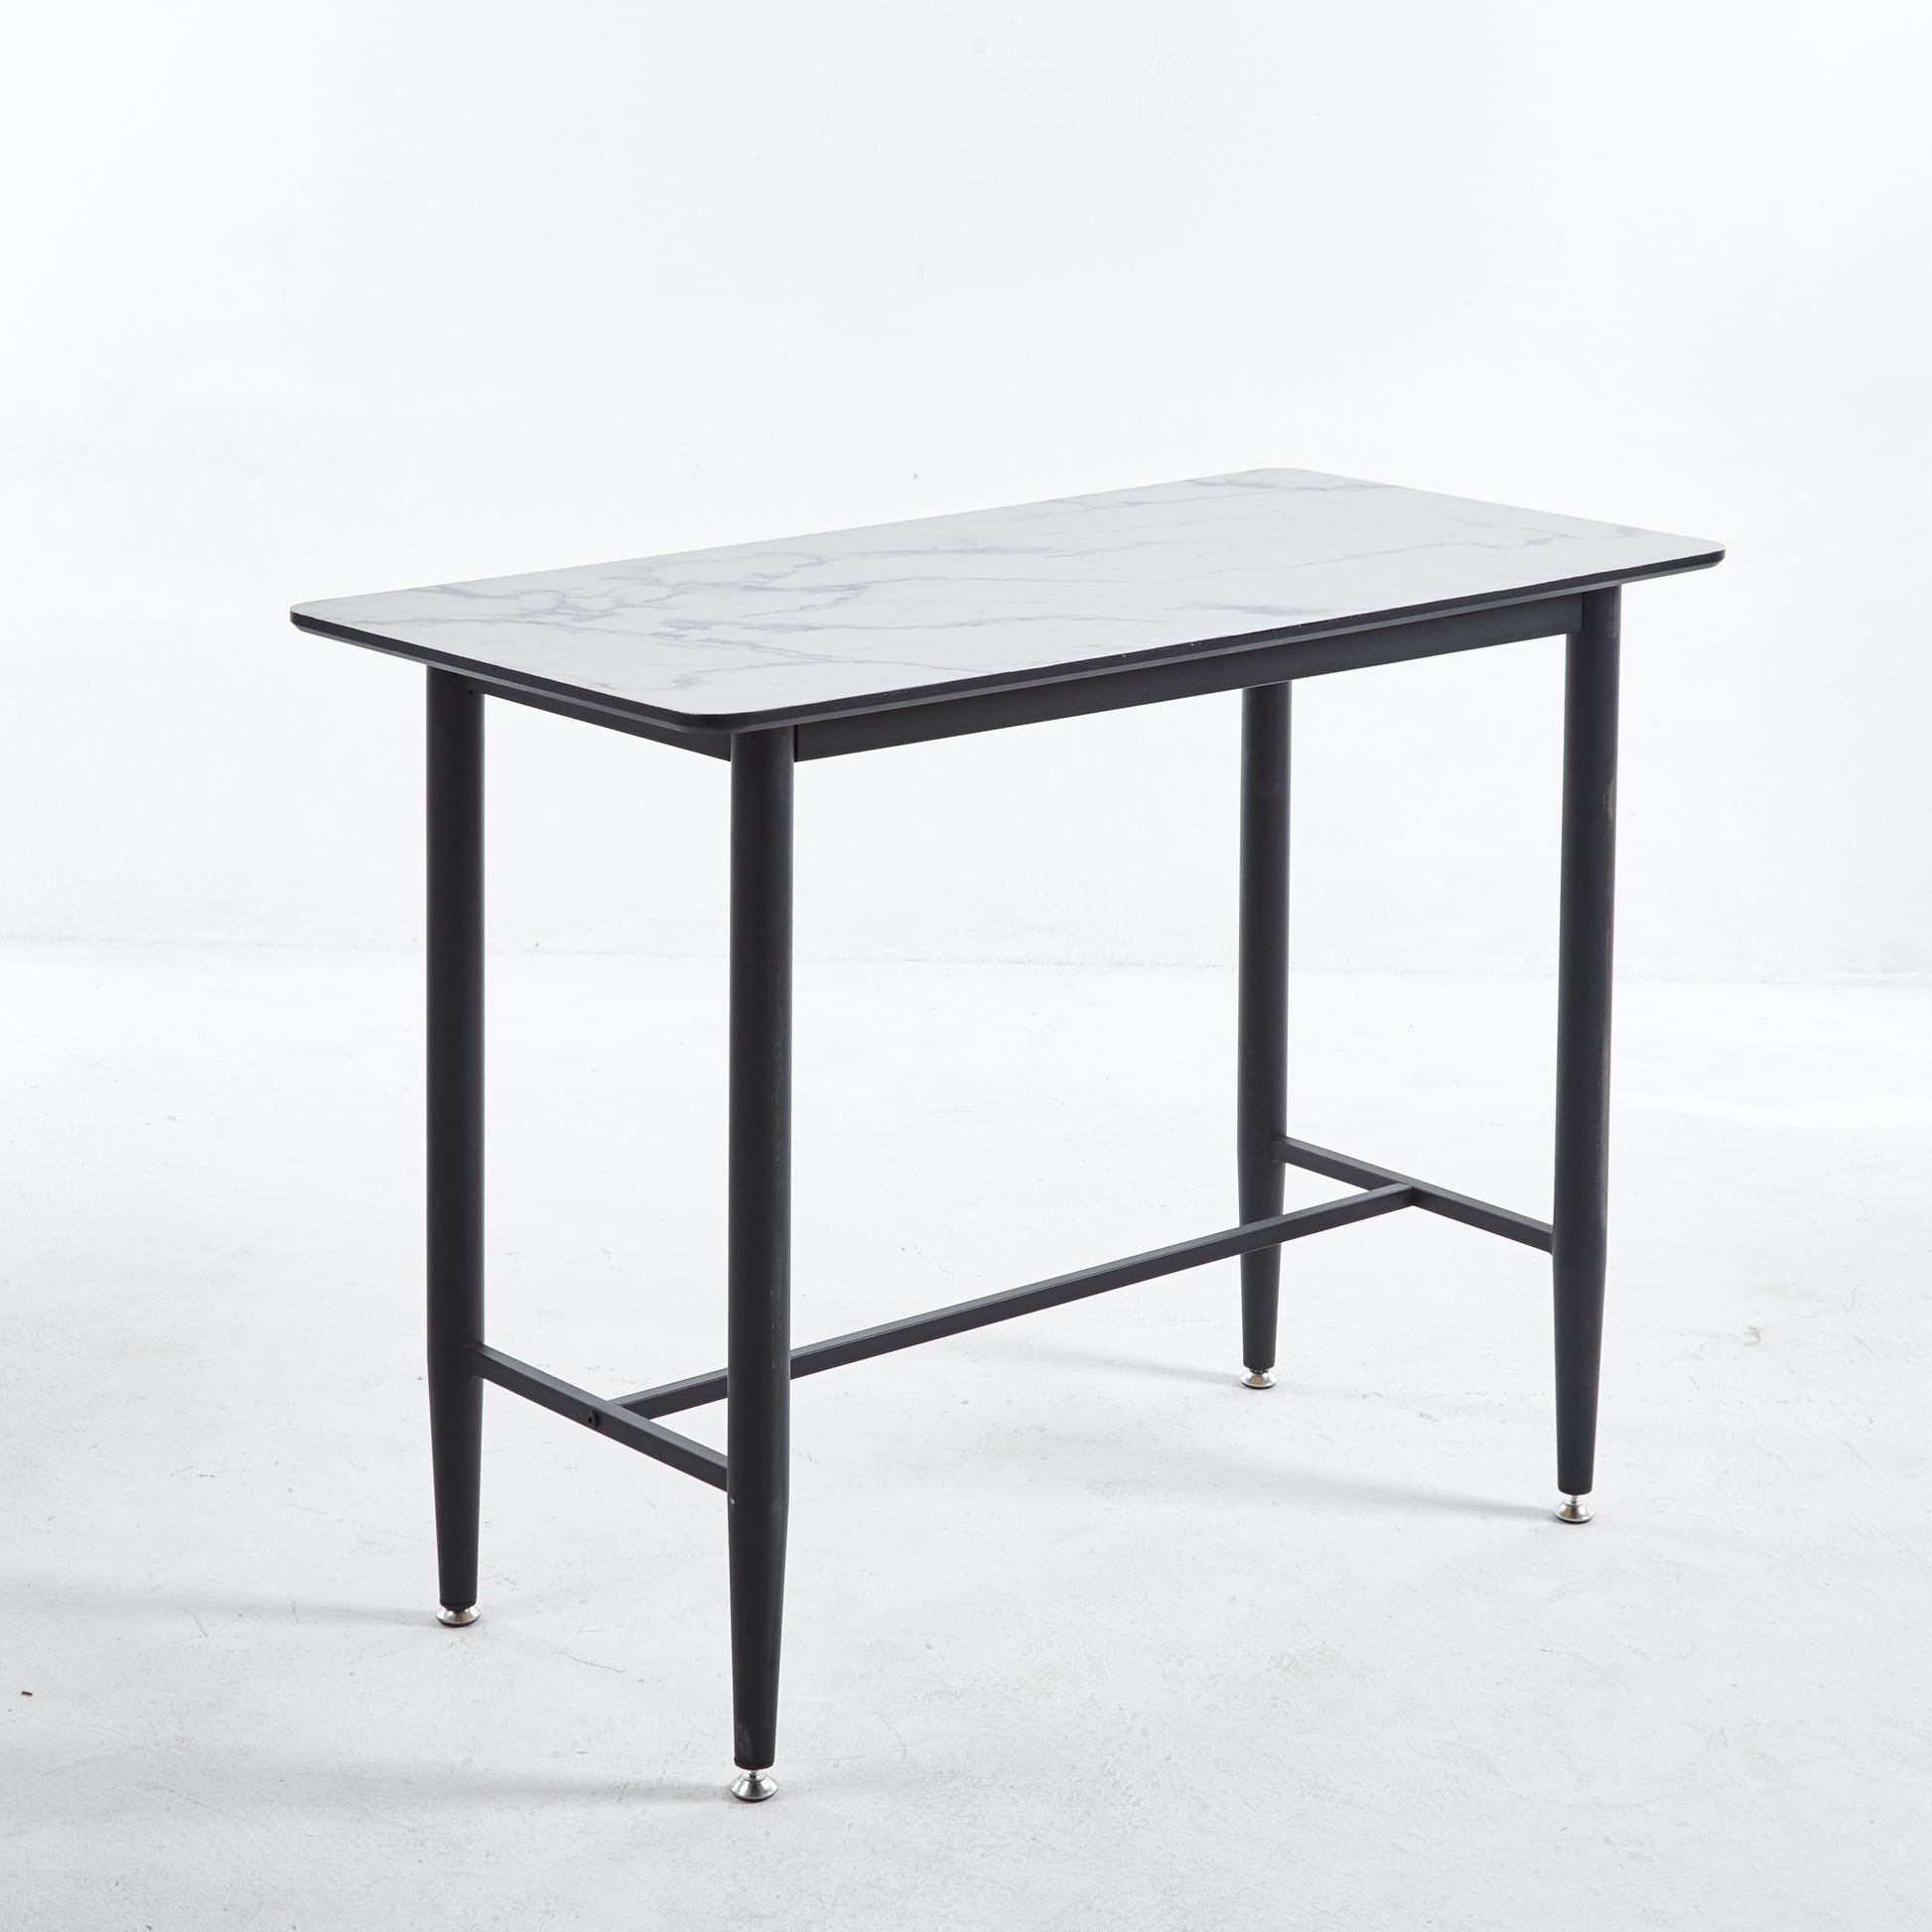 Kendell Table DT KJT02 modern furniture design6